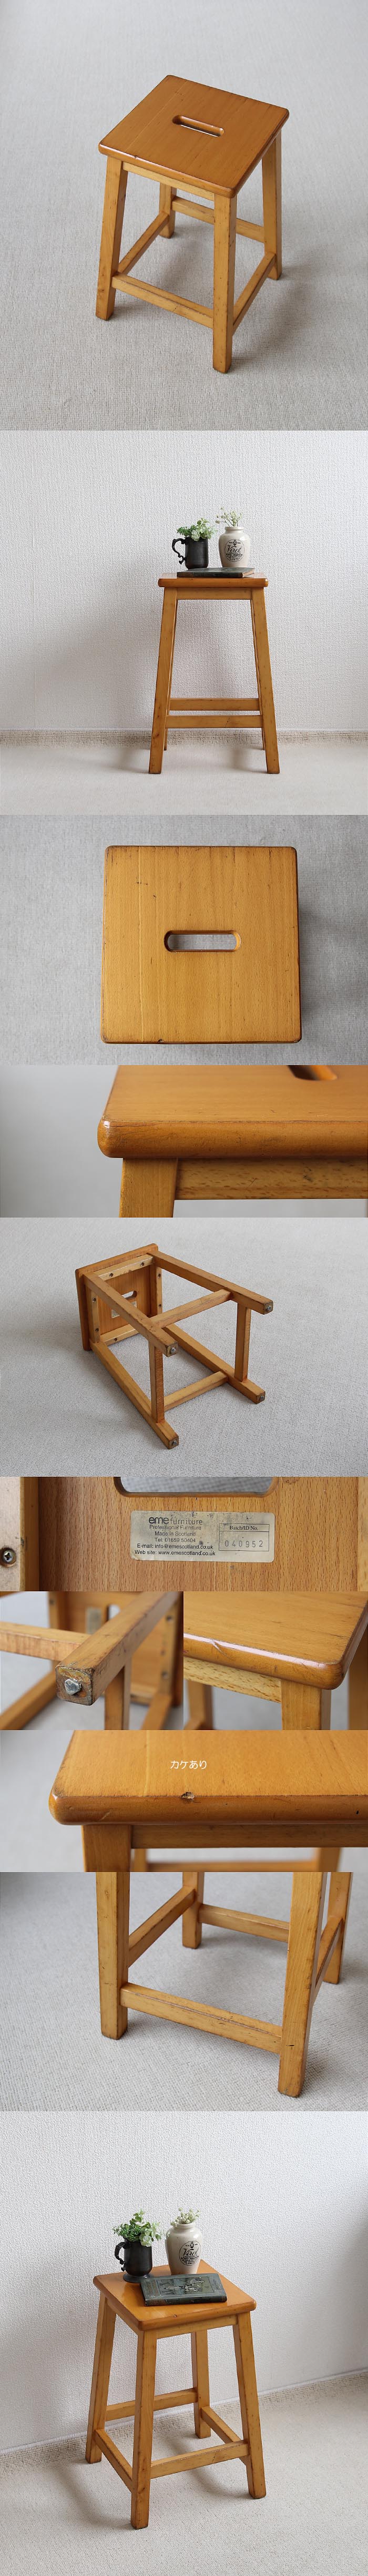 スコットランド ヴィンテージスタイル スクール スツール 木製 イギリス 学校椅子 家具「eme furniture」P-368